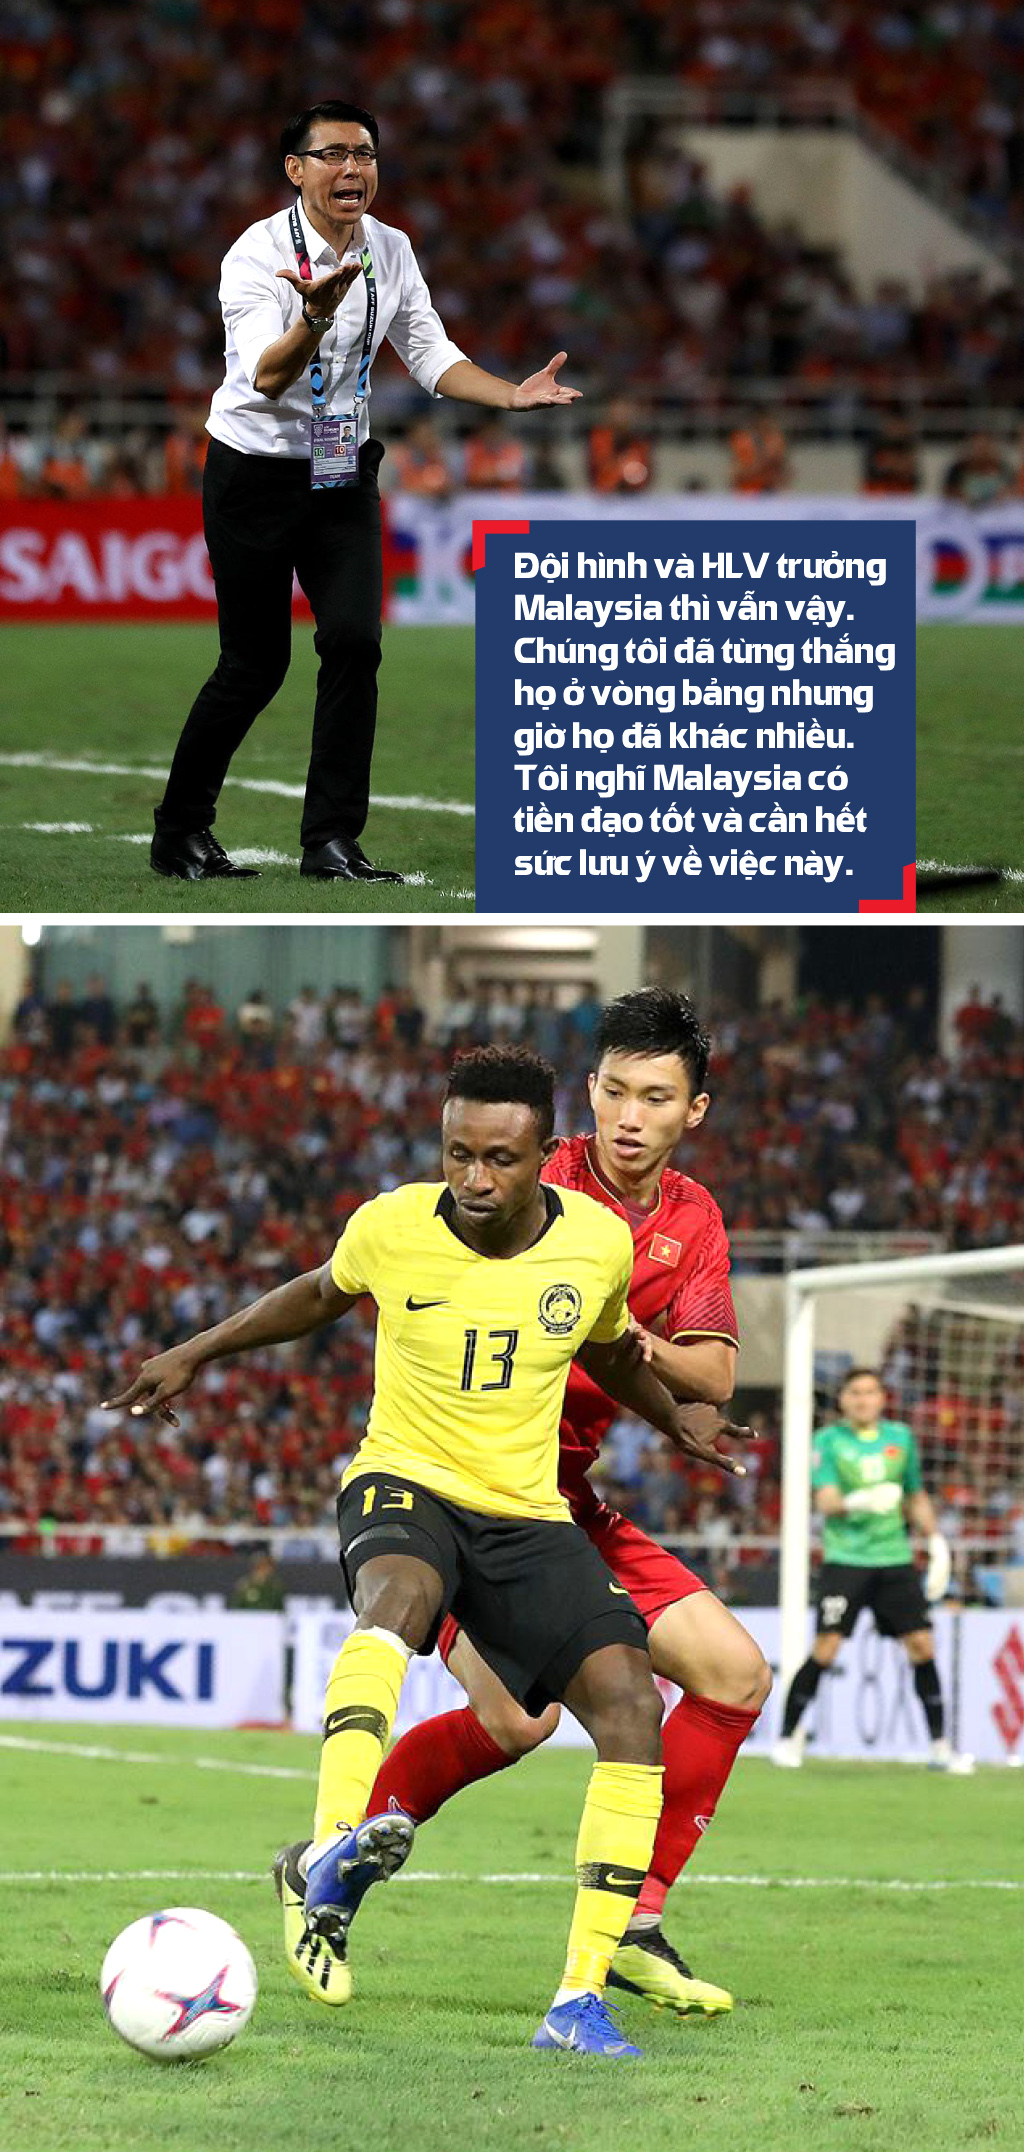 Chung kết lượt đi AFF Cup 2018, Malaysia - Việt Nam: Cuộc chiến không khoan nhượng ảnh 5